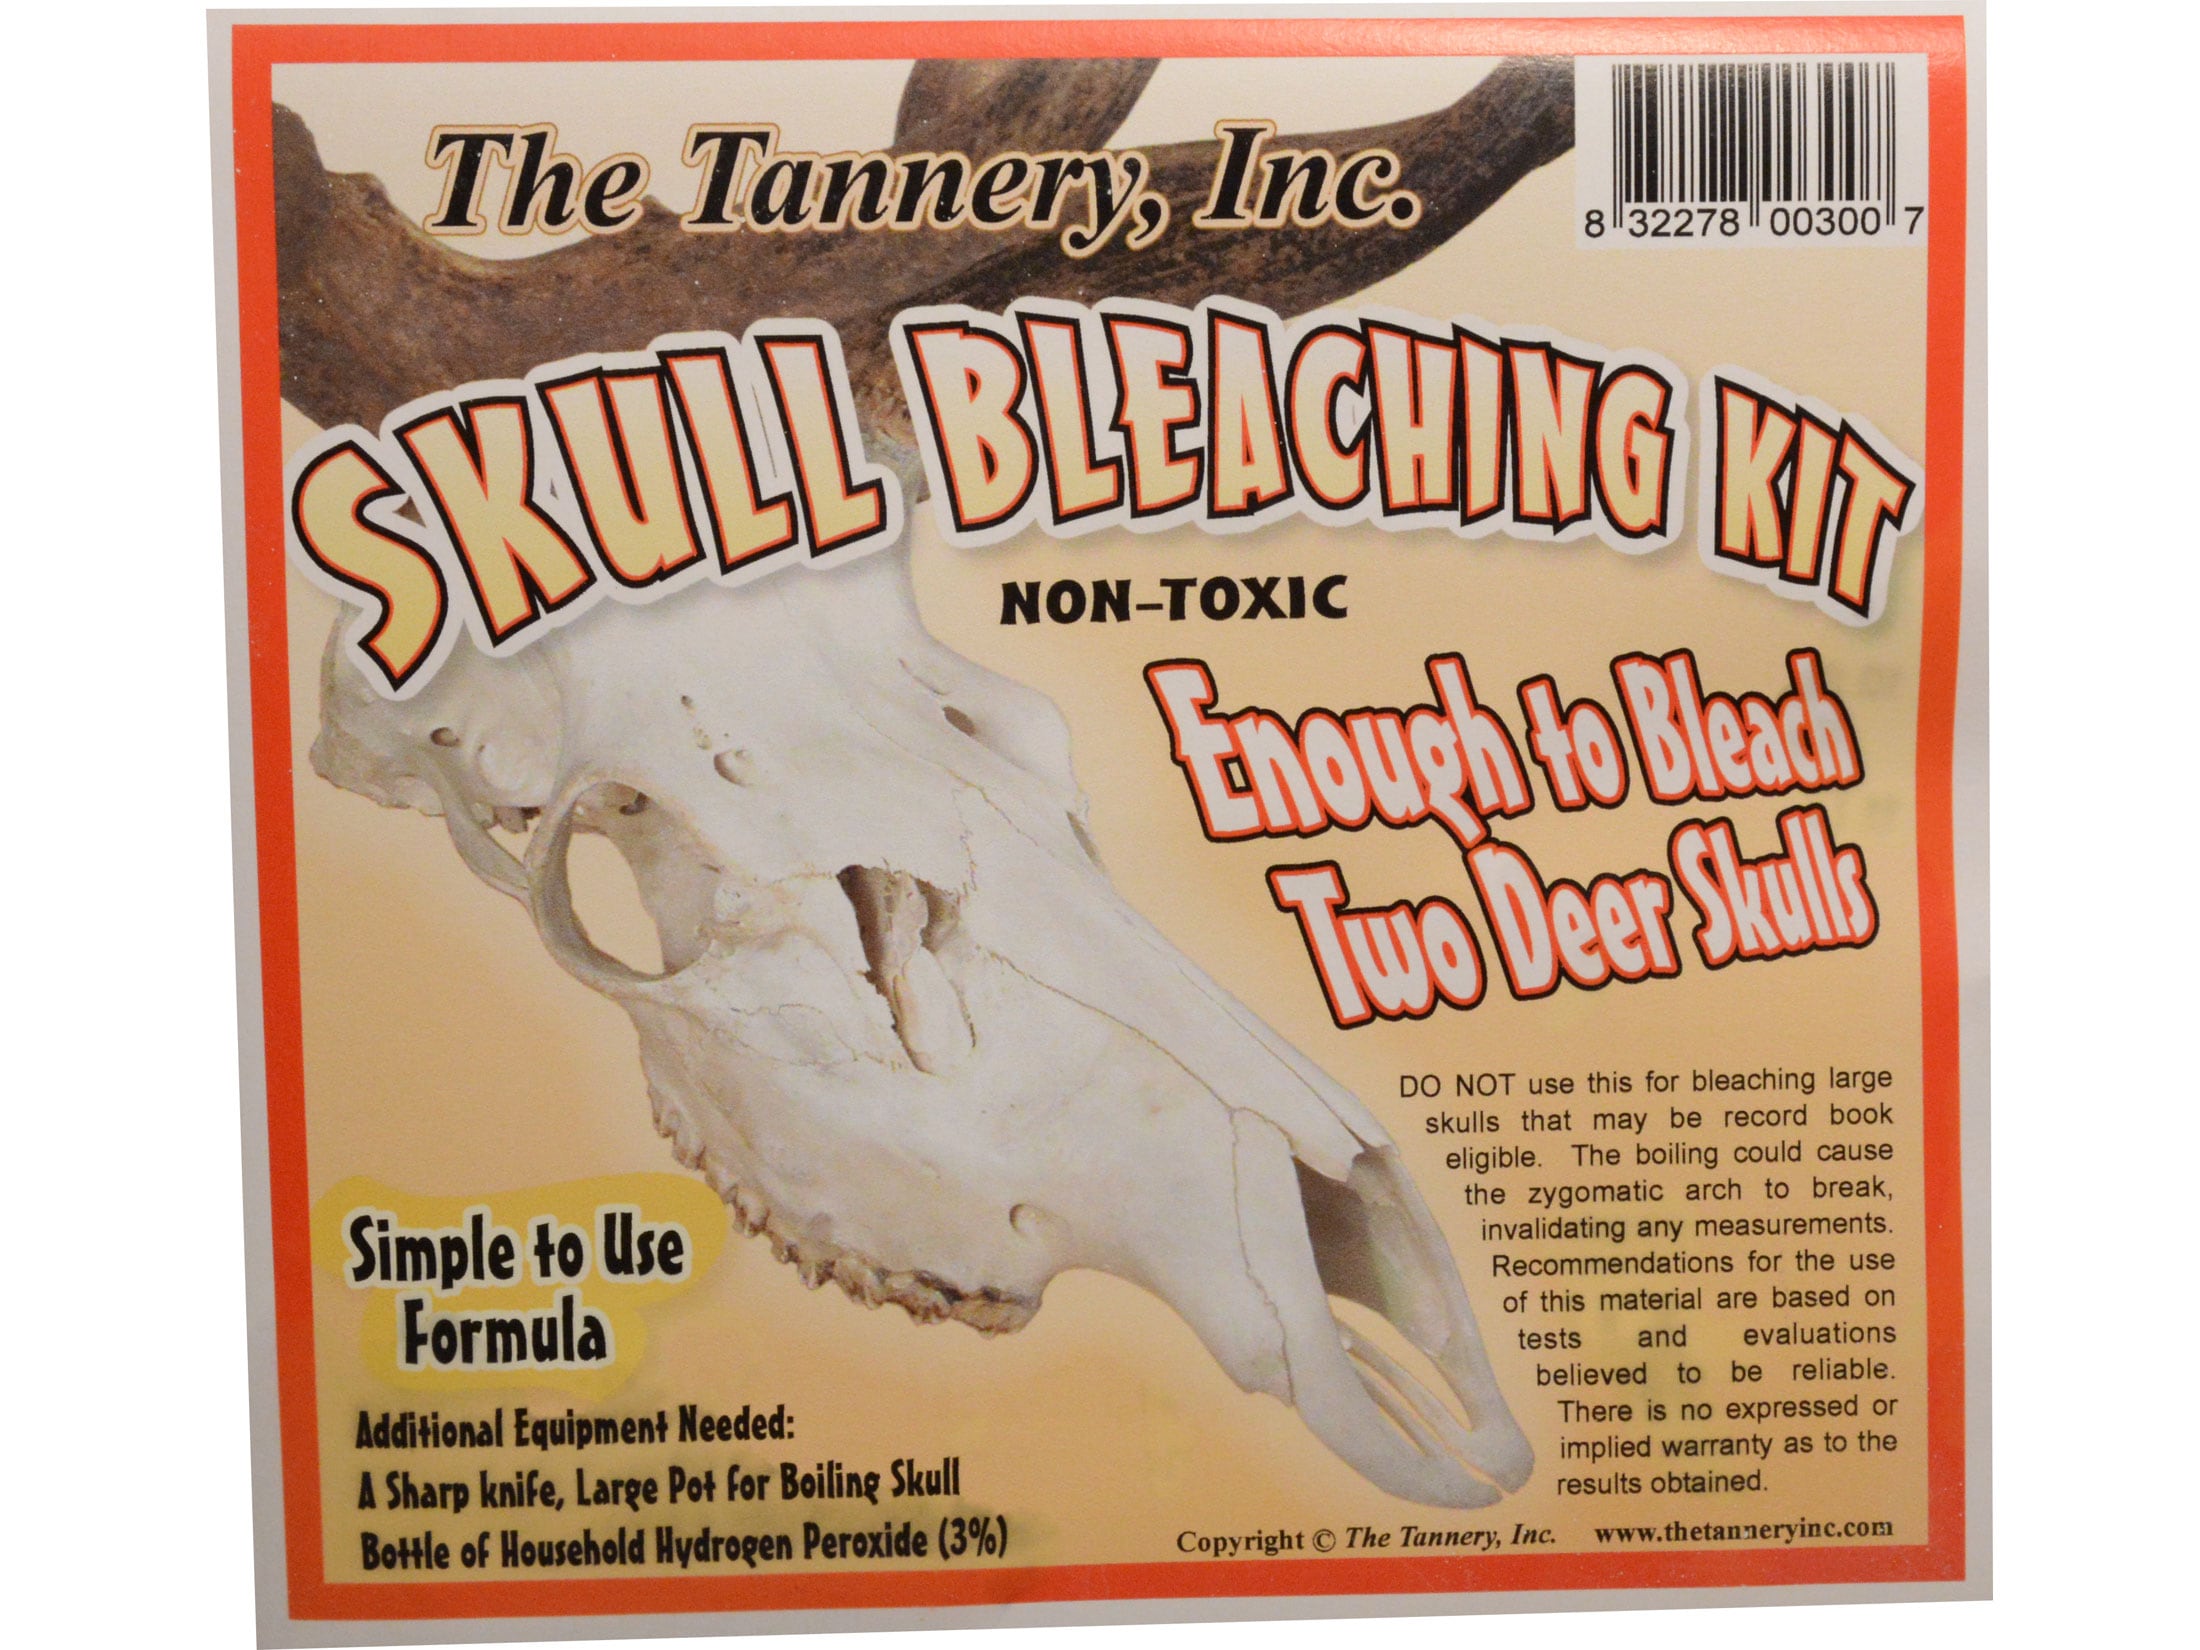 The Tannery Skull Bleaching Kit